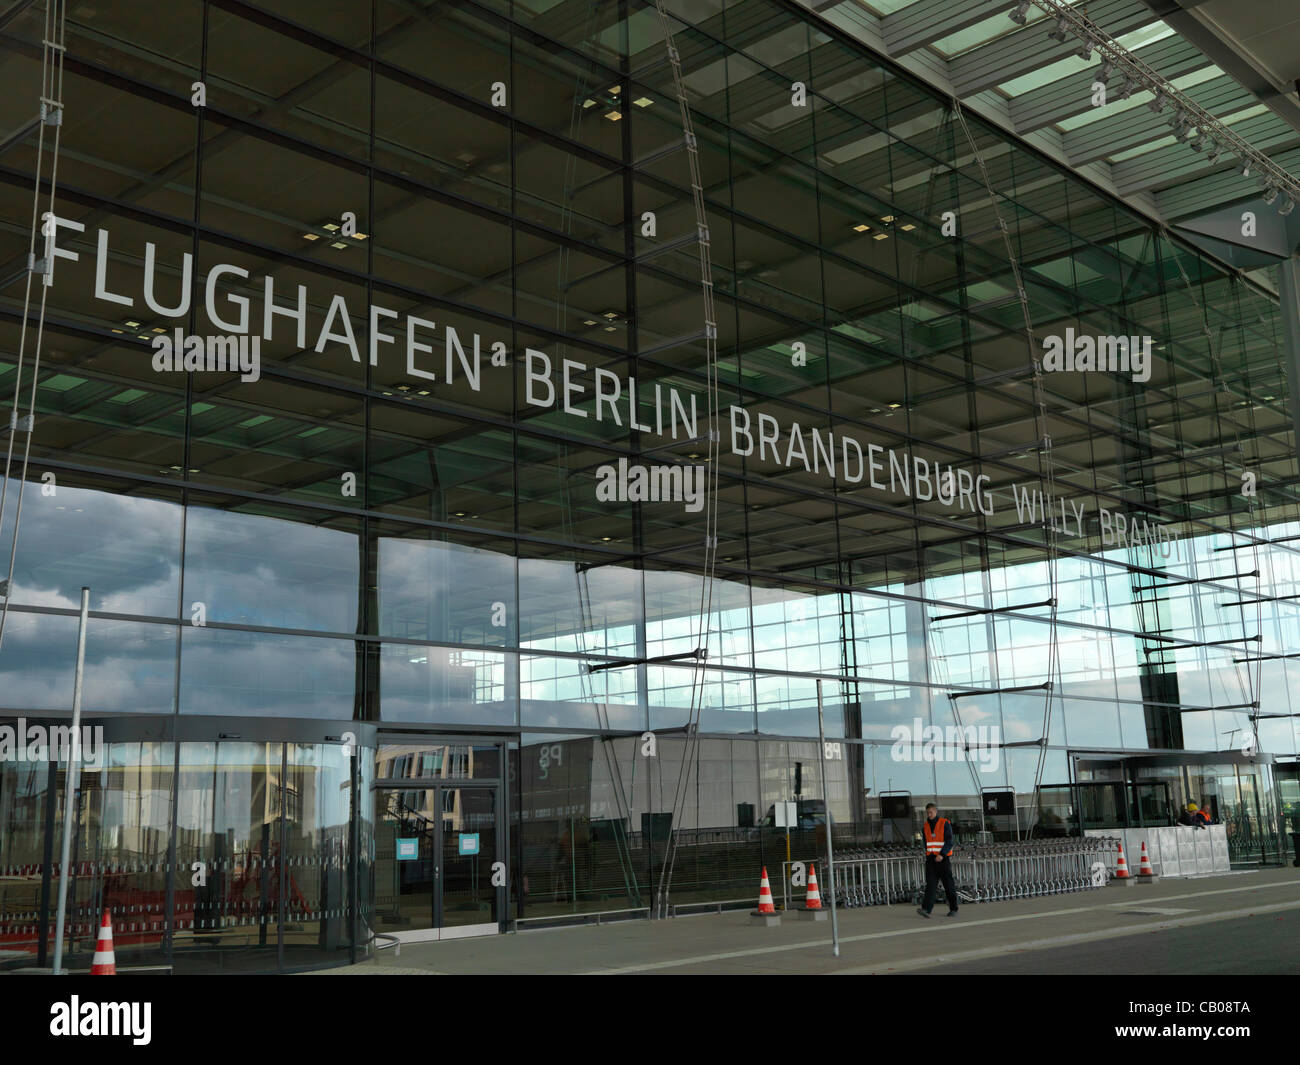 Nouvelle entrée de l'aéroport Berlin-brandebourg lors des jours, Hasselblad haute résolution photo. Nom de l'aéroport en lettres lisibles : Flughafen Berlin-Brandenburg Willy Brandt. Banque D'Images